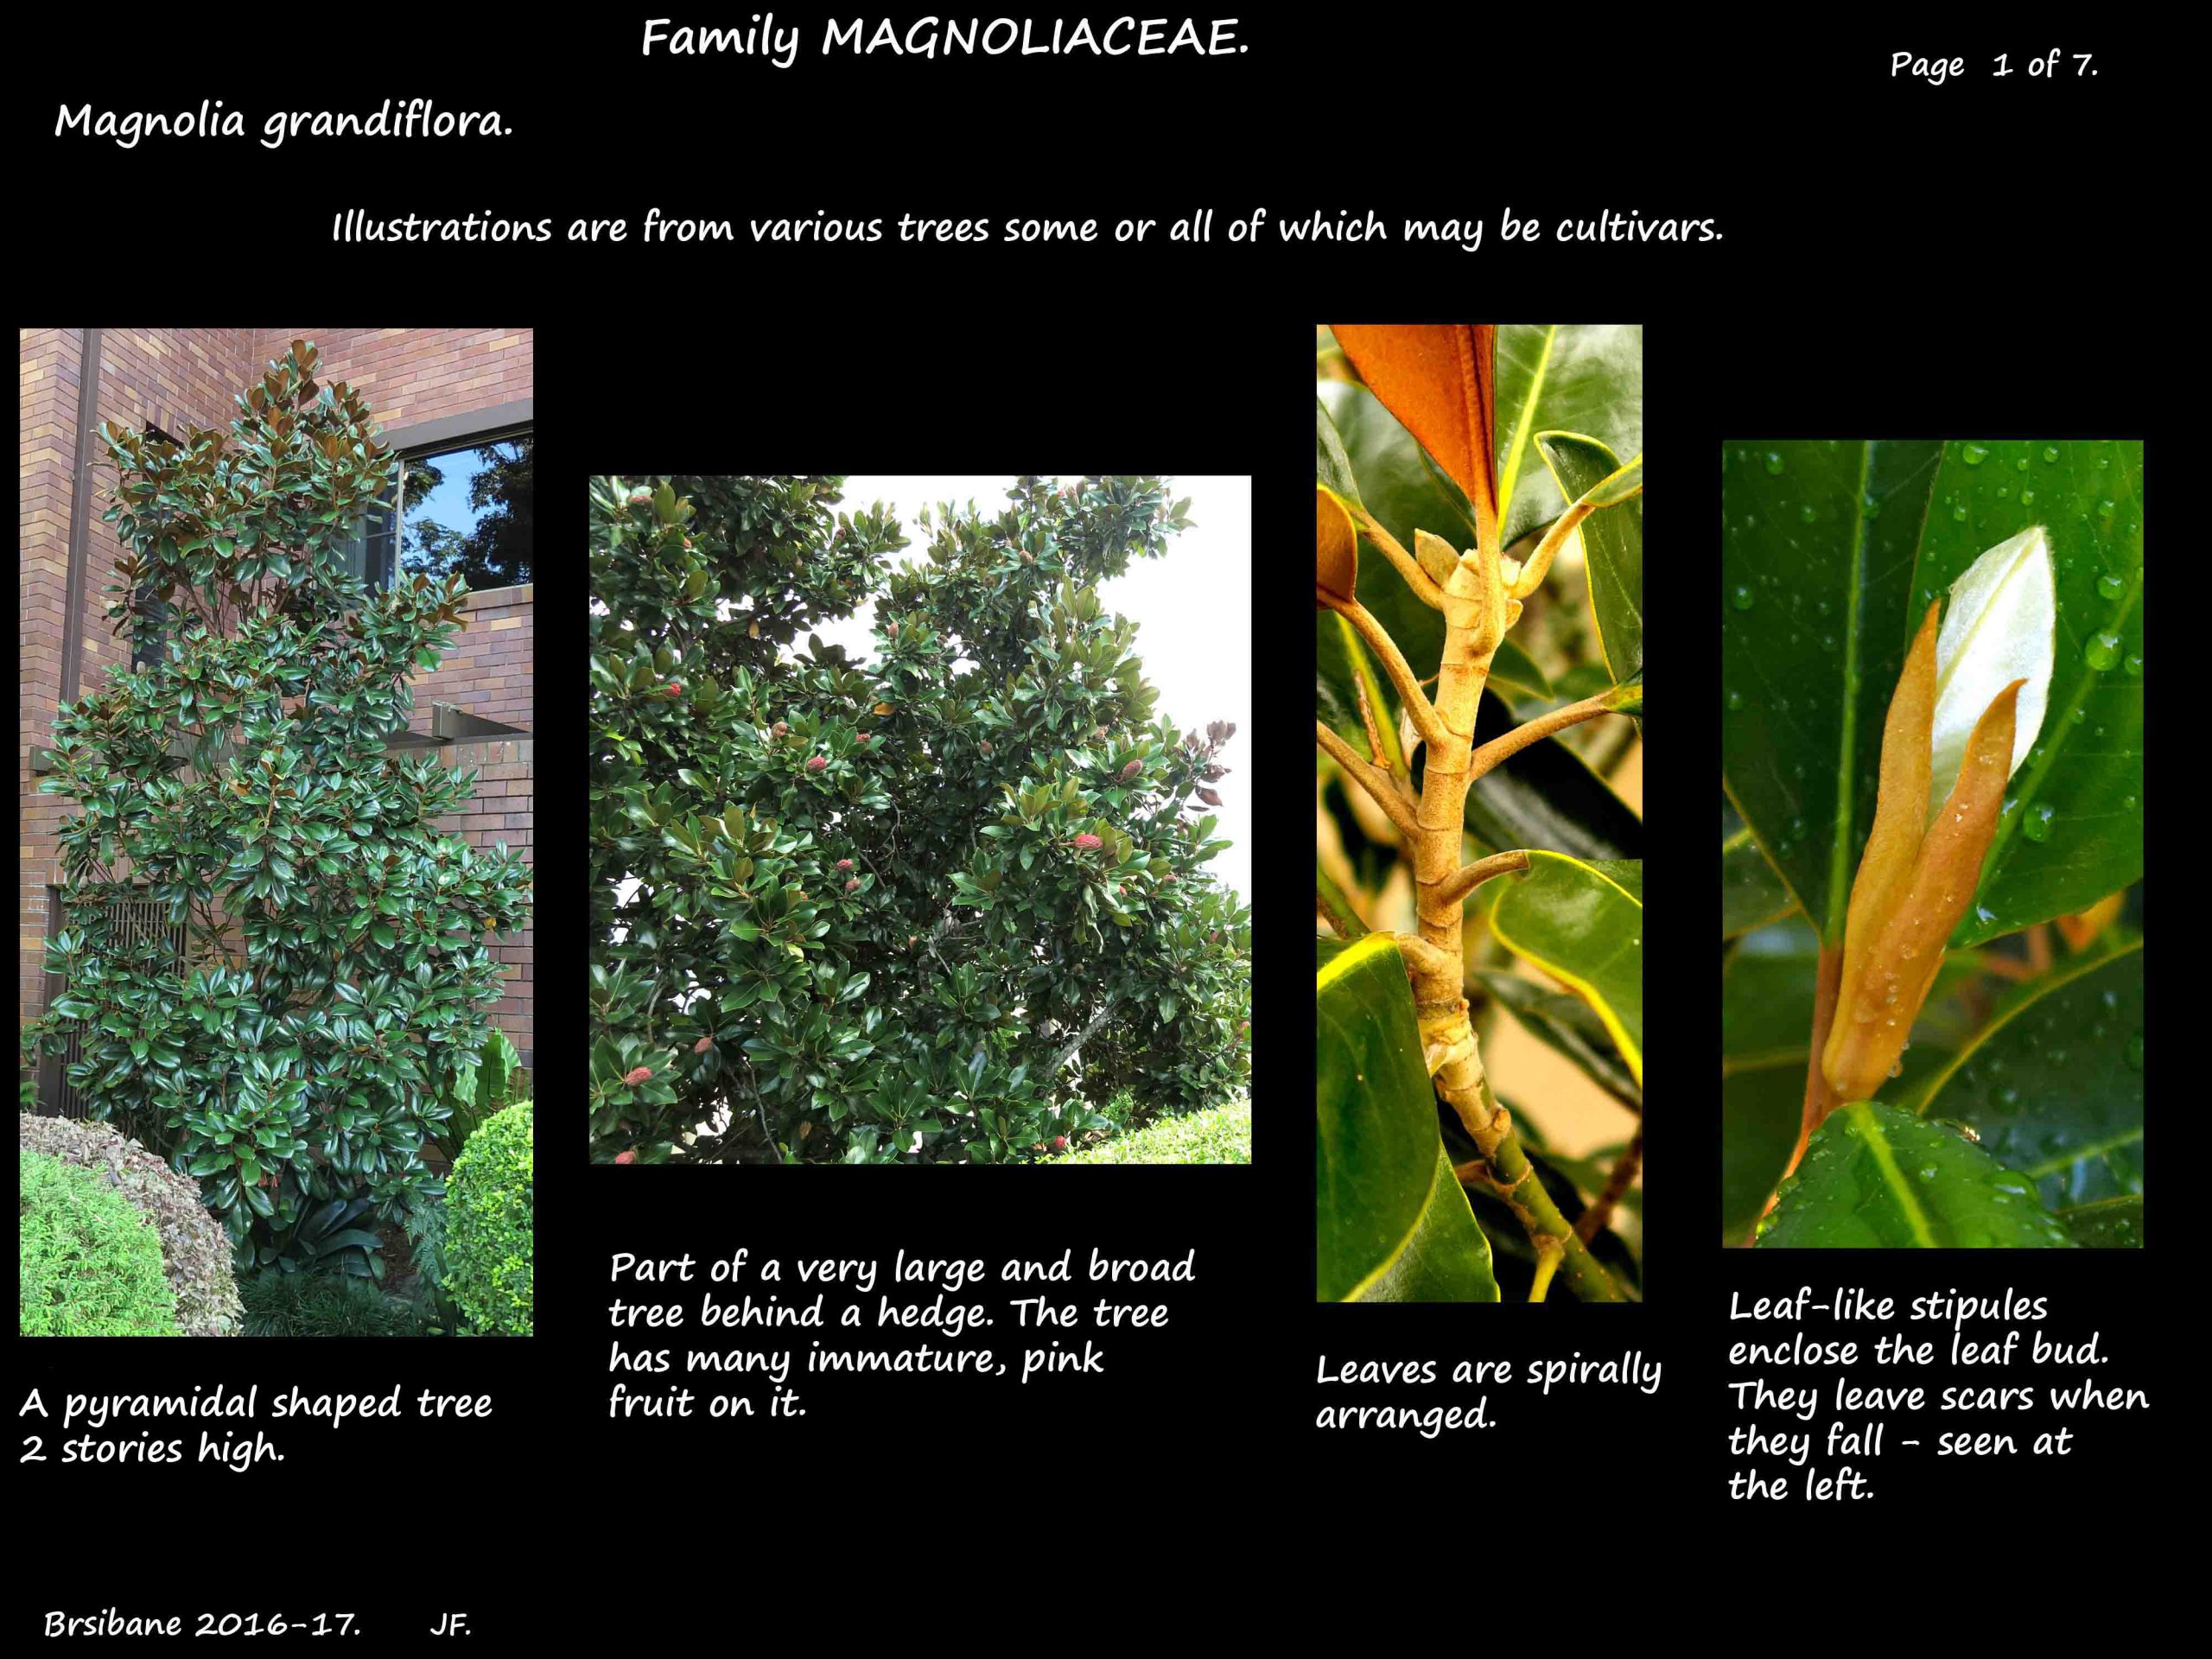 1 Magnolia grandiflora trees & stipules